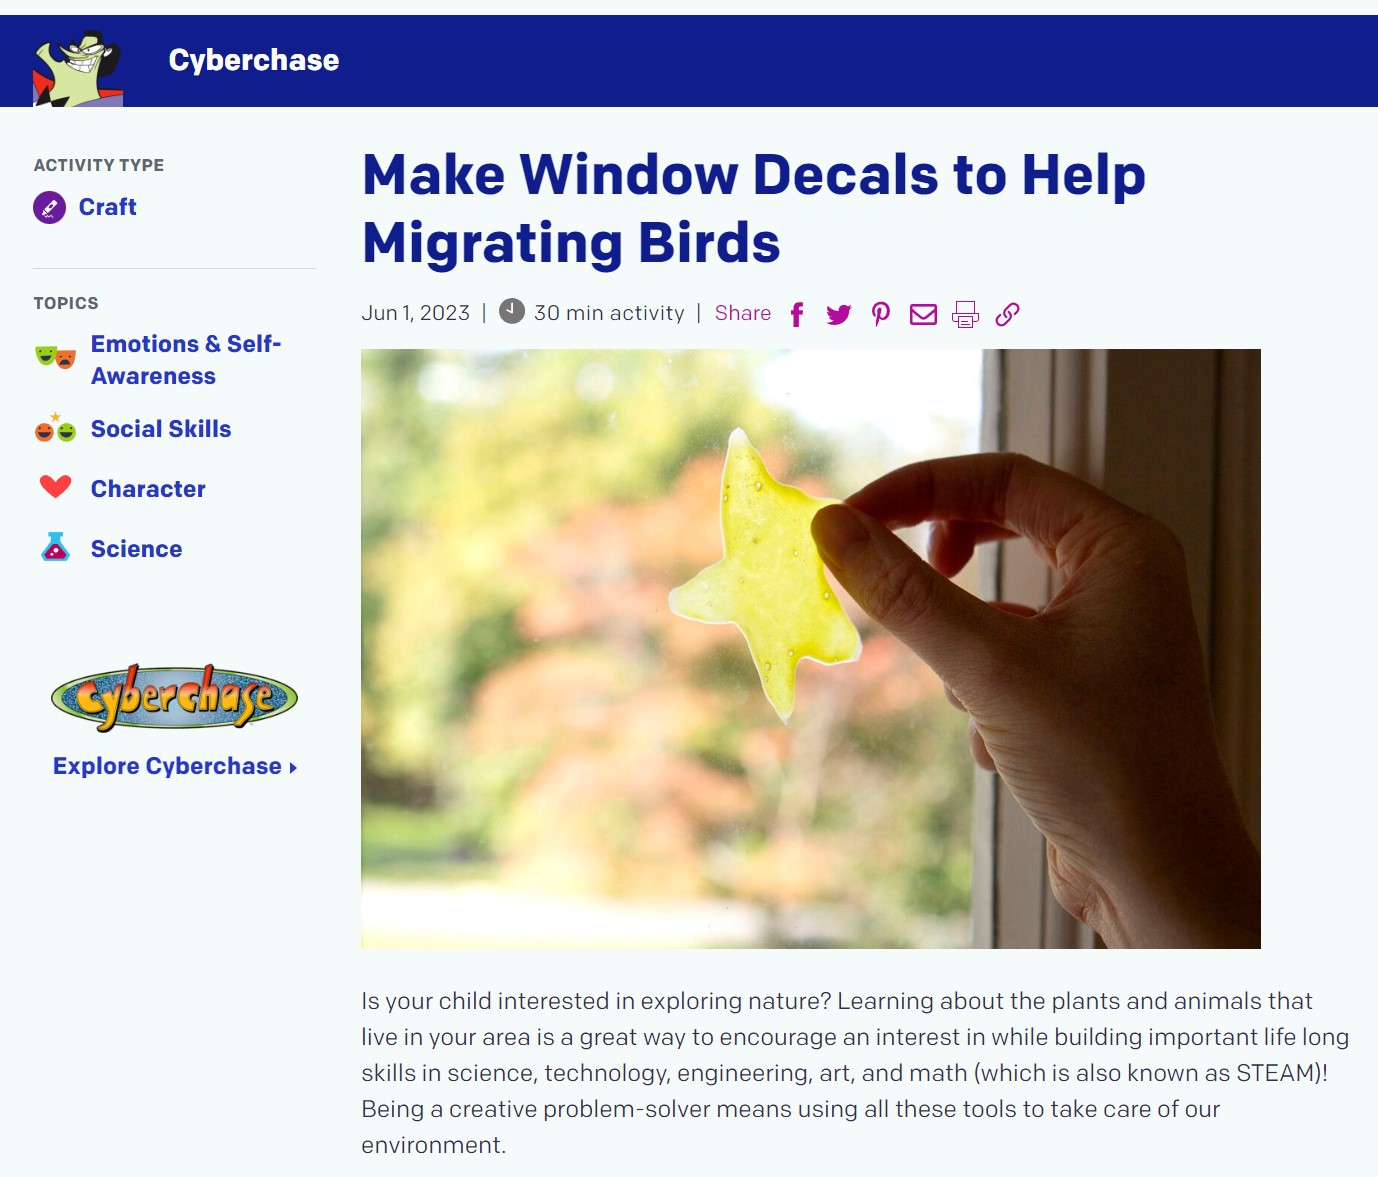 Make Window Decals to Help Migrating Birds